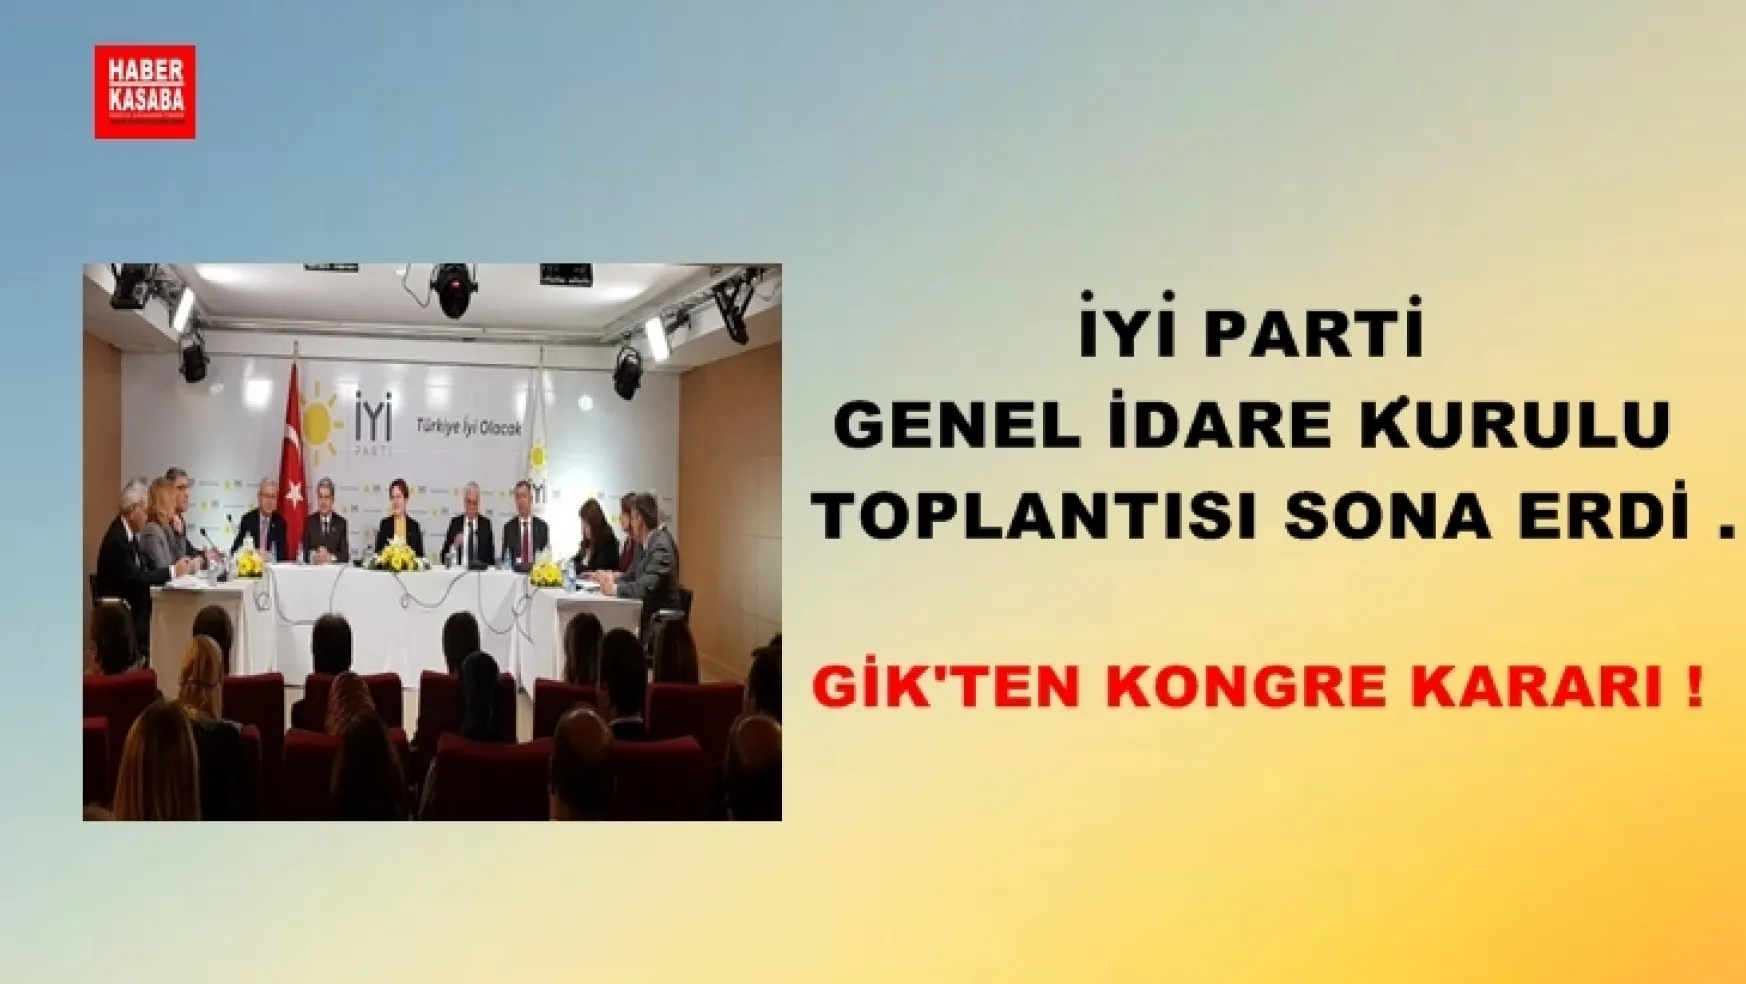 İYİ Parti Genel İdare Kurulu toplantısı sona erdi .